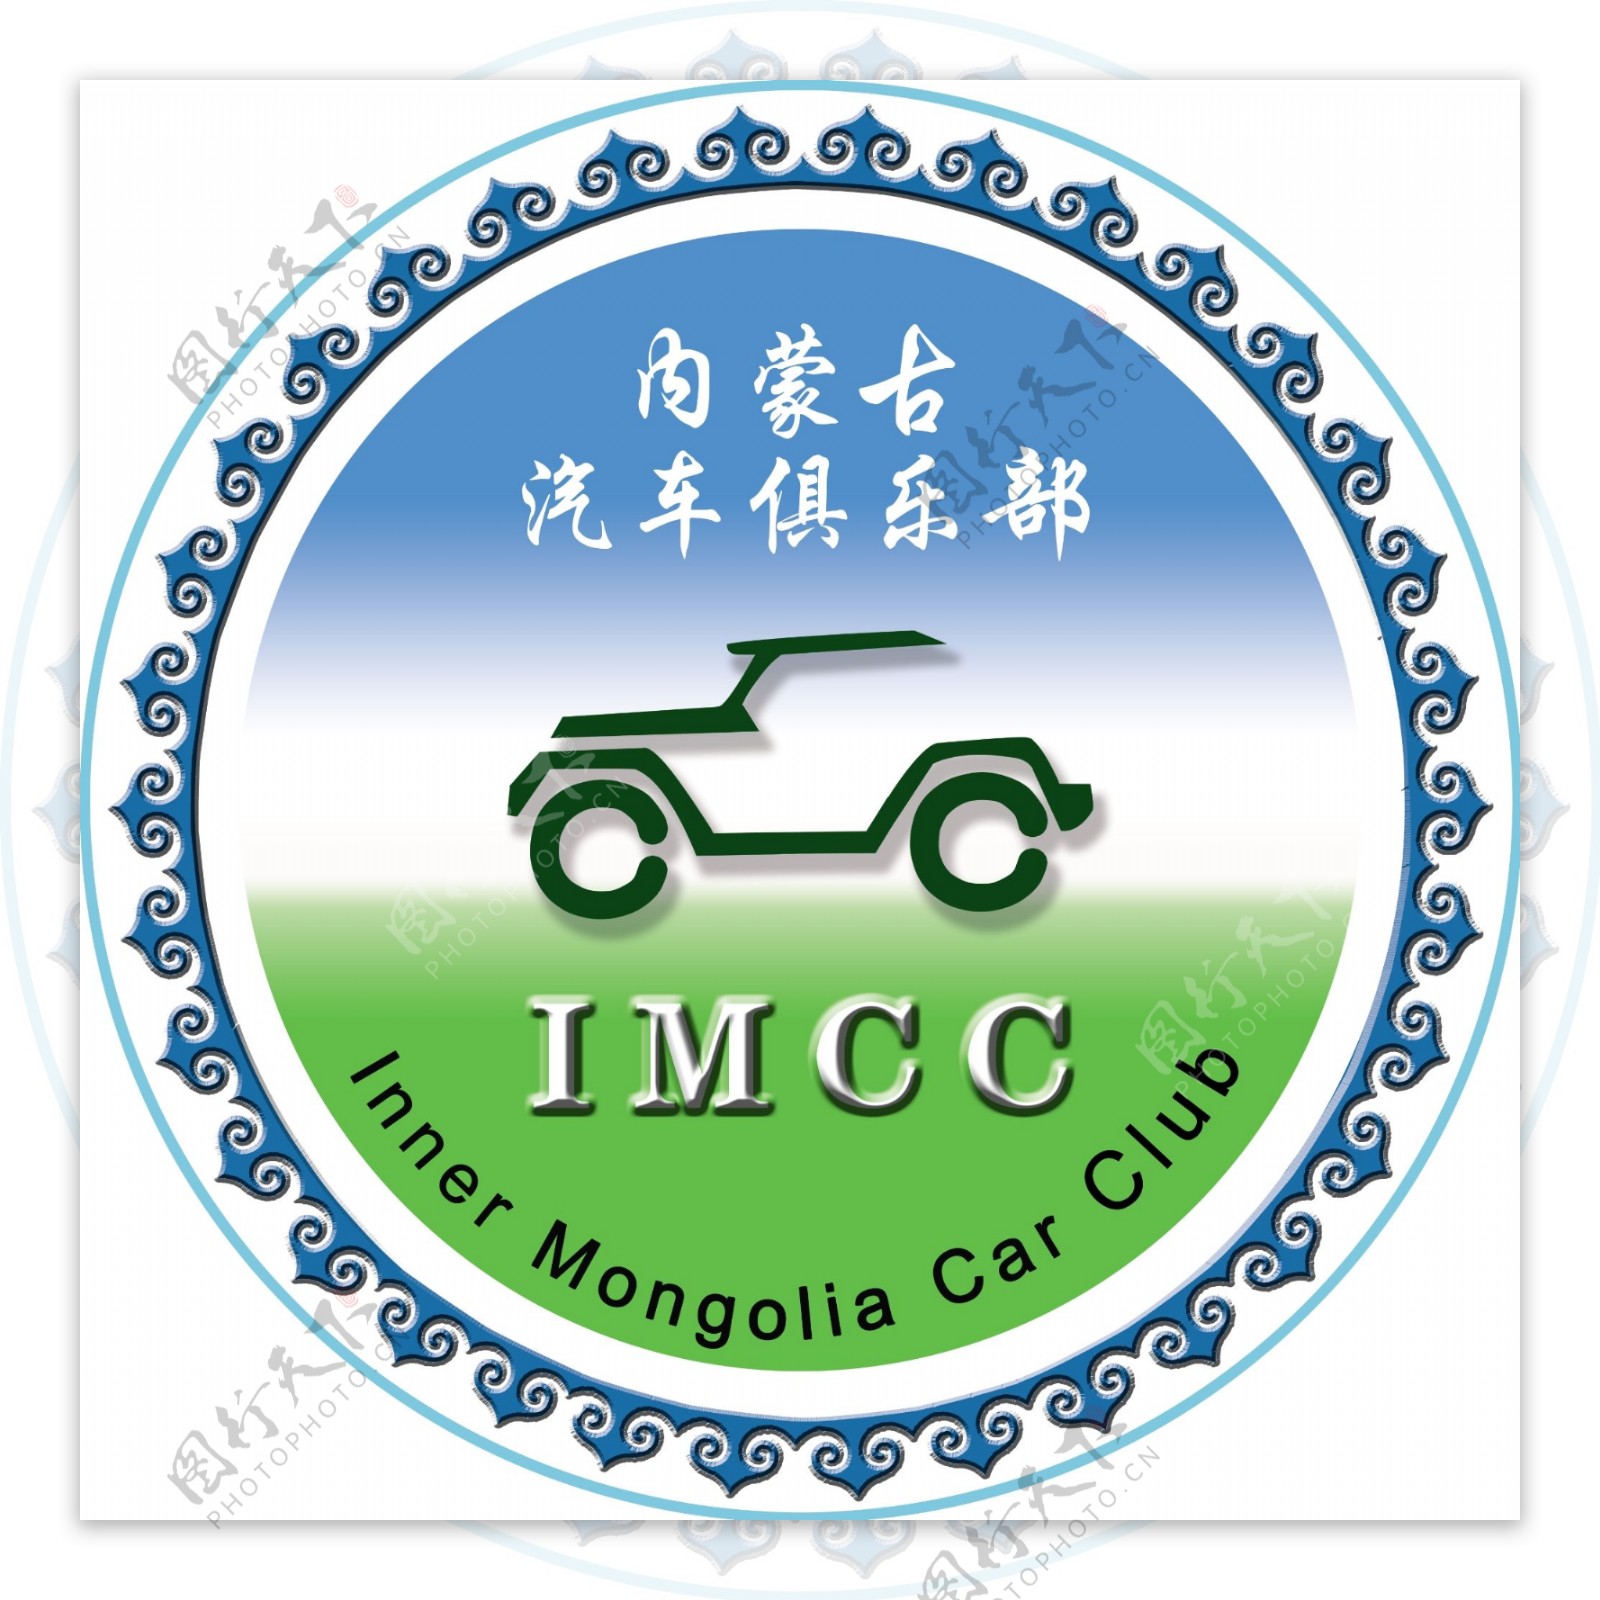 内蒙古汽车俱乐部标定稿版